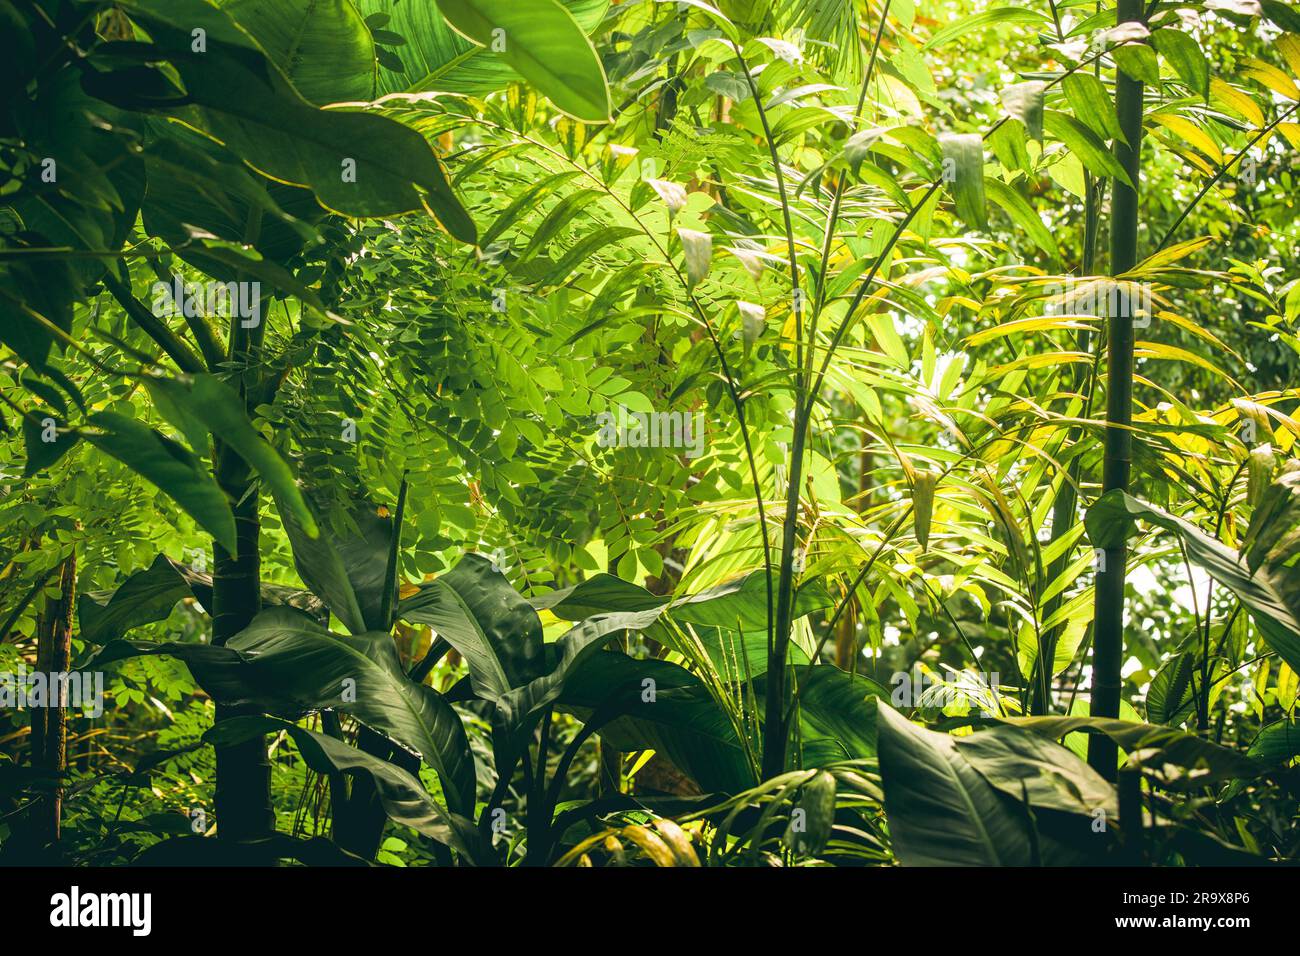 La végétation tropicale avec des plantes vertes et arbres ind daylight Banque D'Images